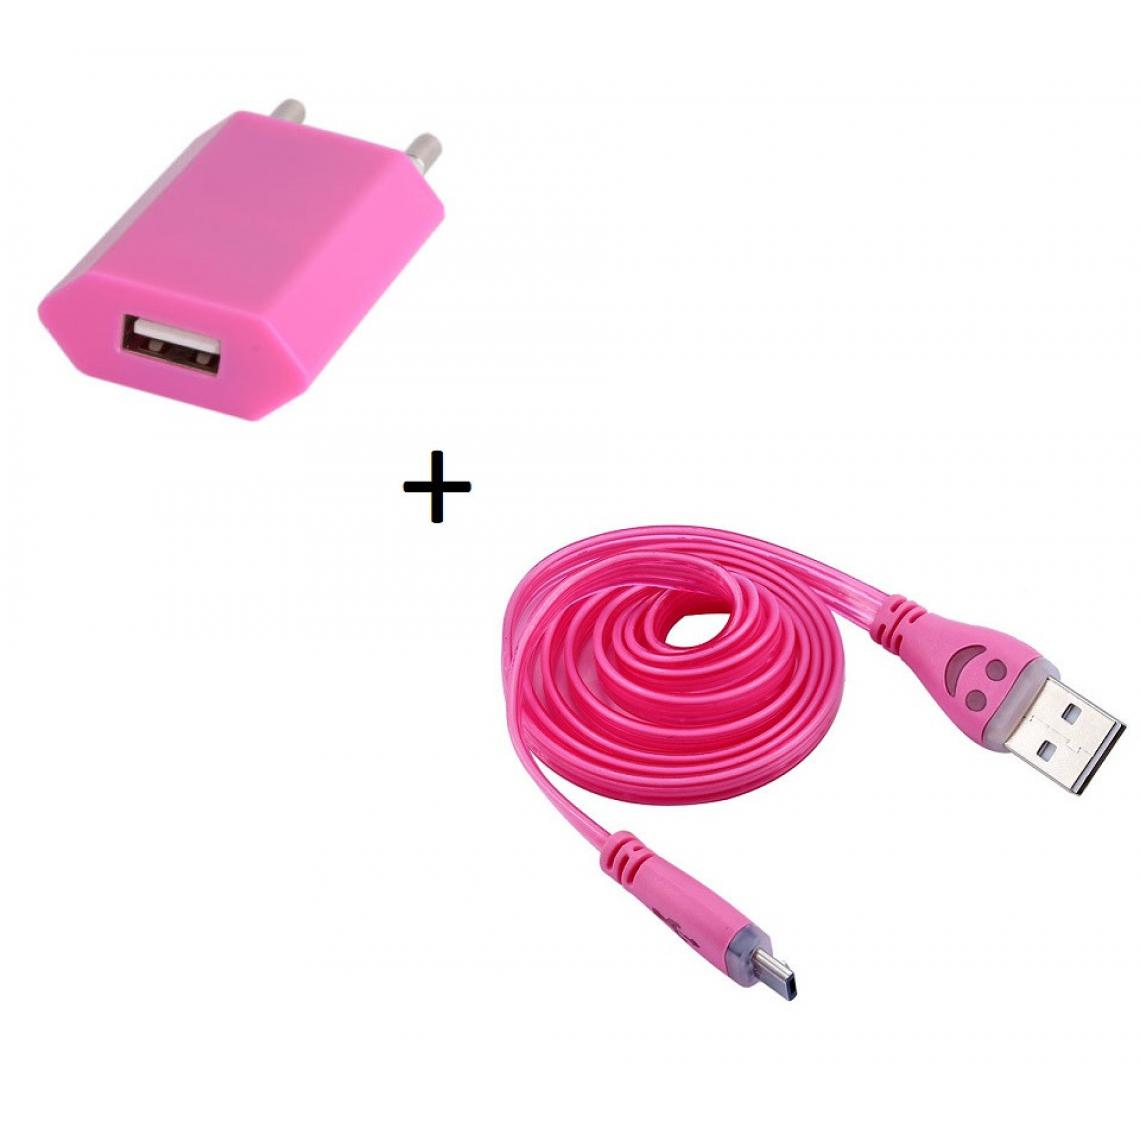 Shot - Pack Chargeur pour Enceinte Bose SoundLink Color II Smartphone Micro USB (Cable Smiley LED + Prise Secteur USB) Android Connecte (ROSE BONBON) - Chargeur secteur téléphone